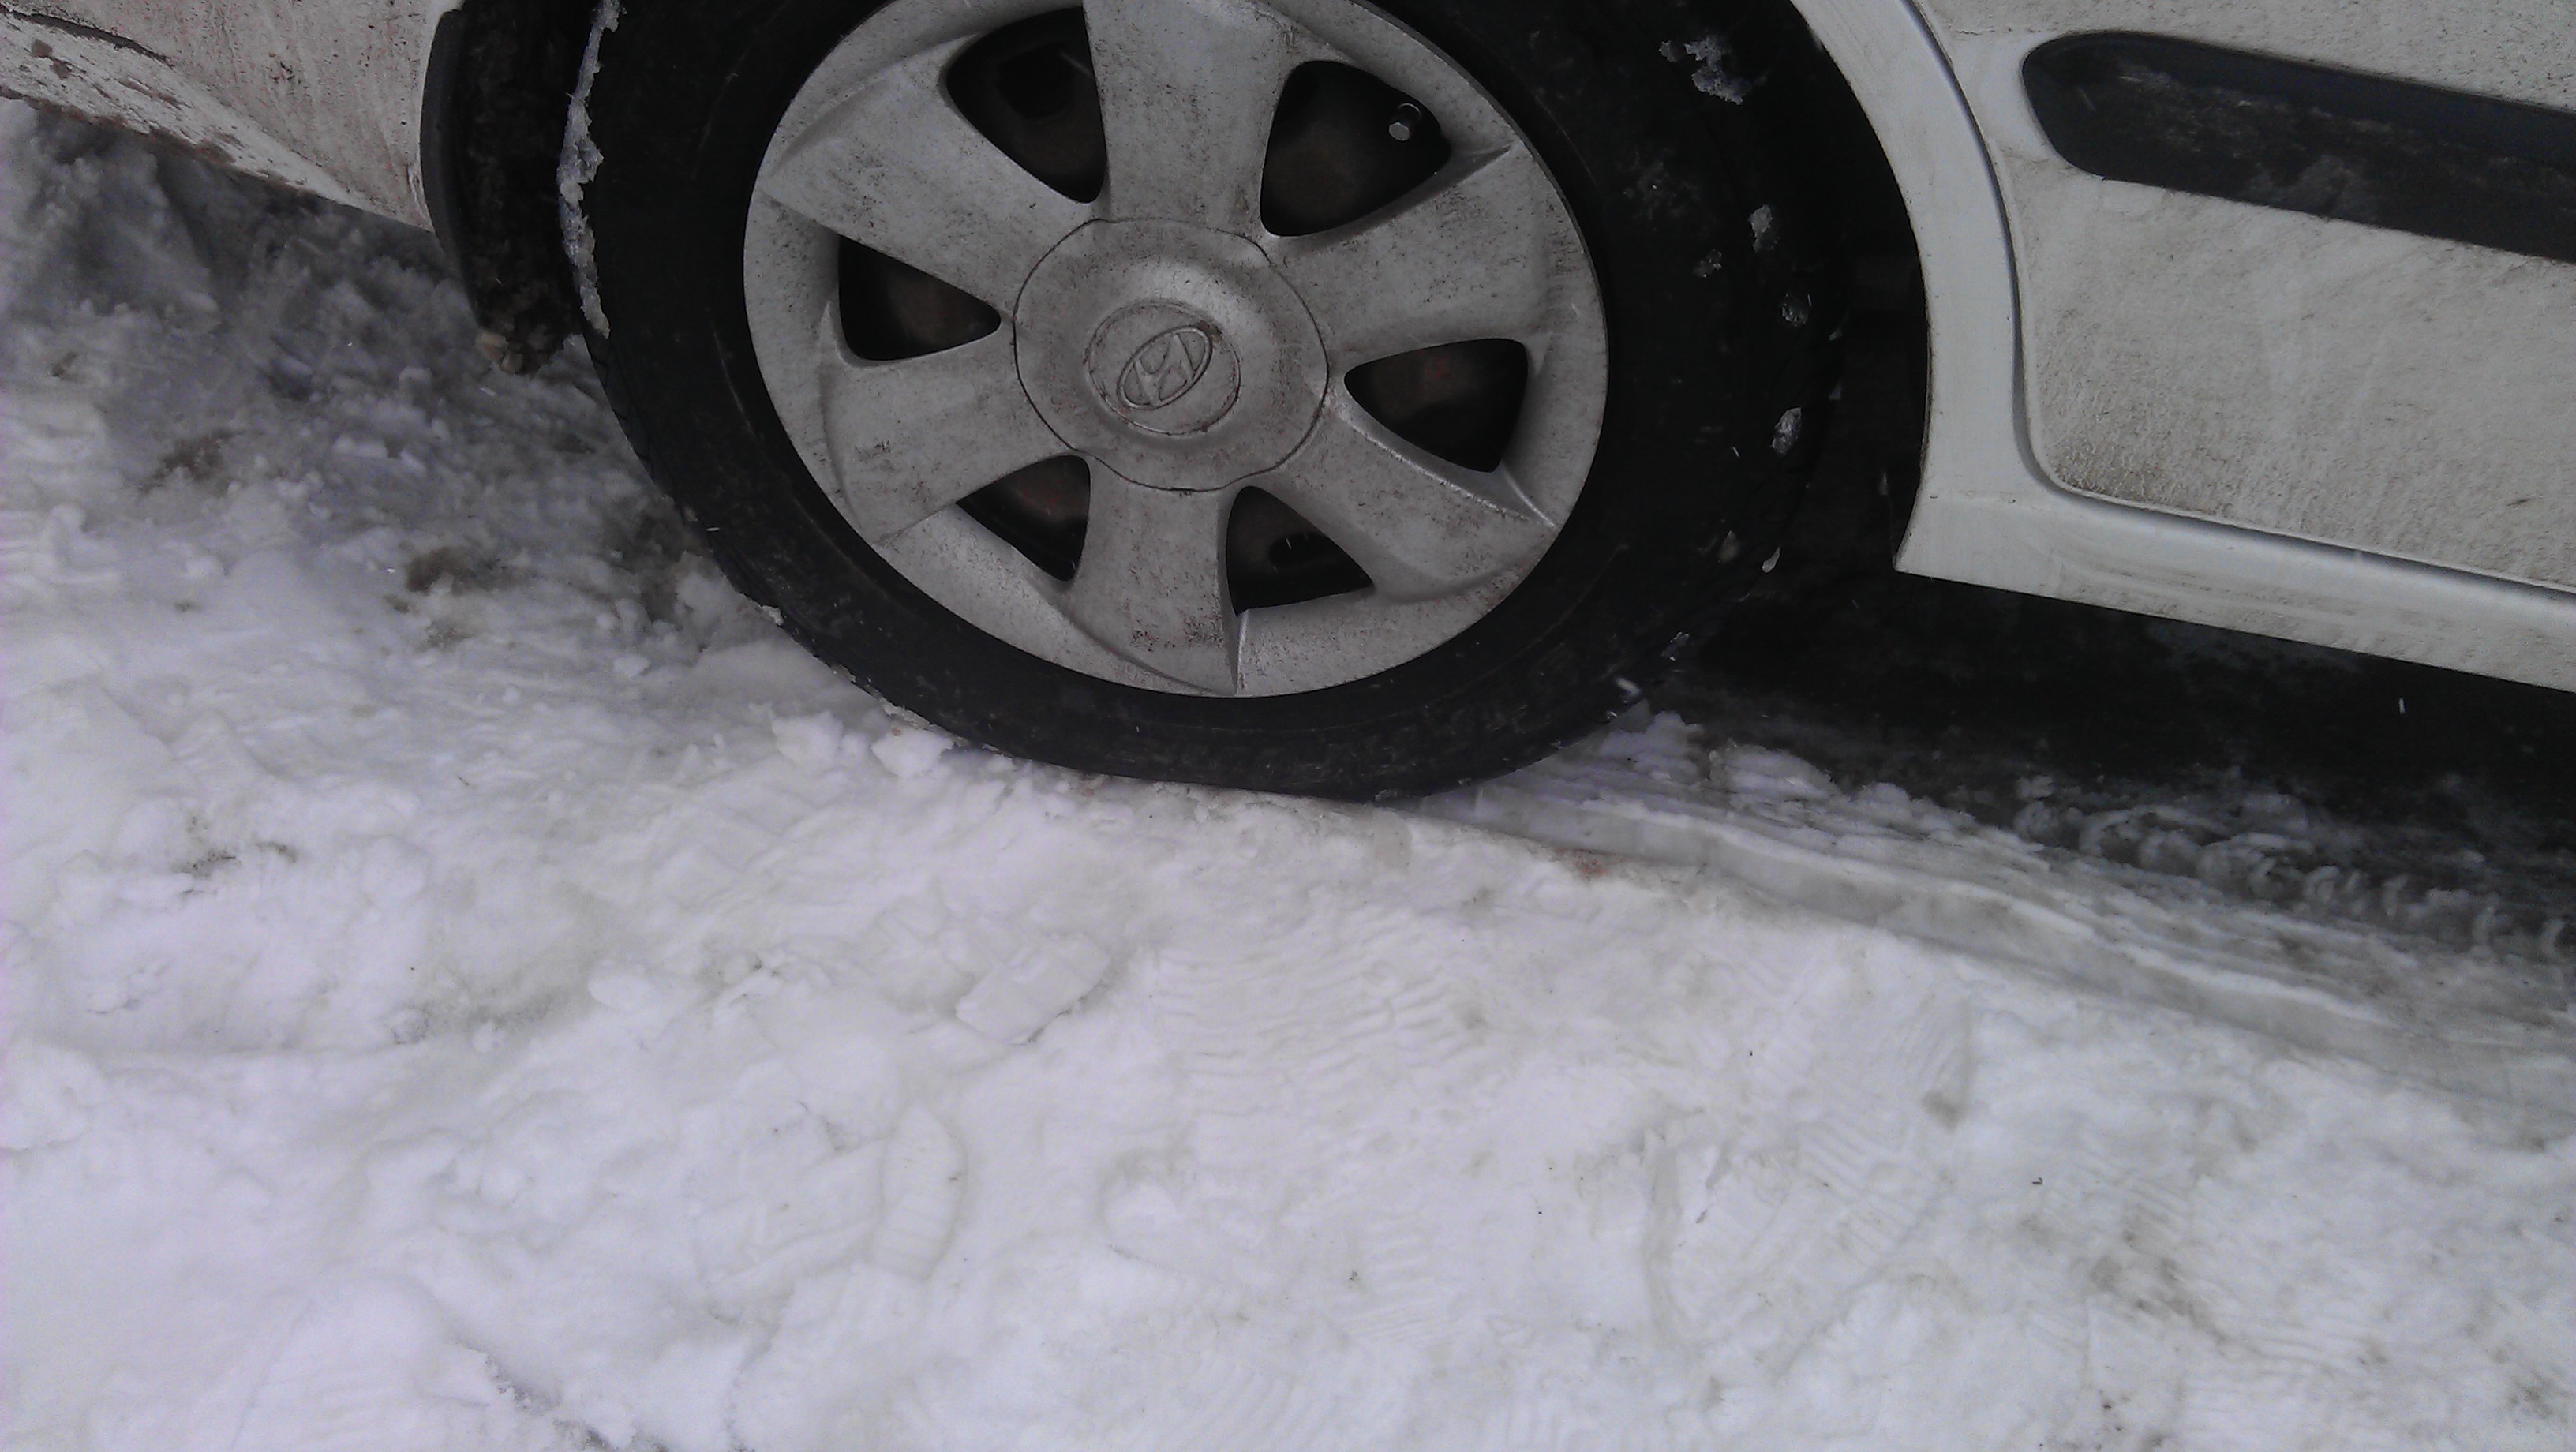  Karlı zemine arabayı parketmek?